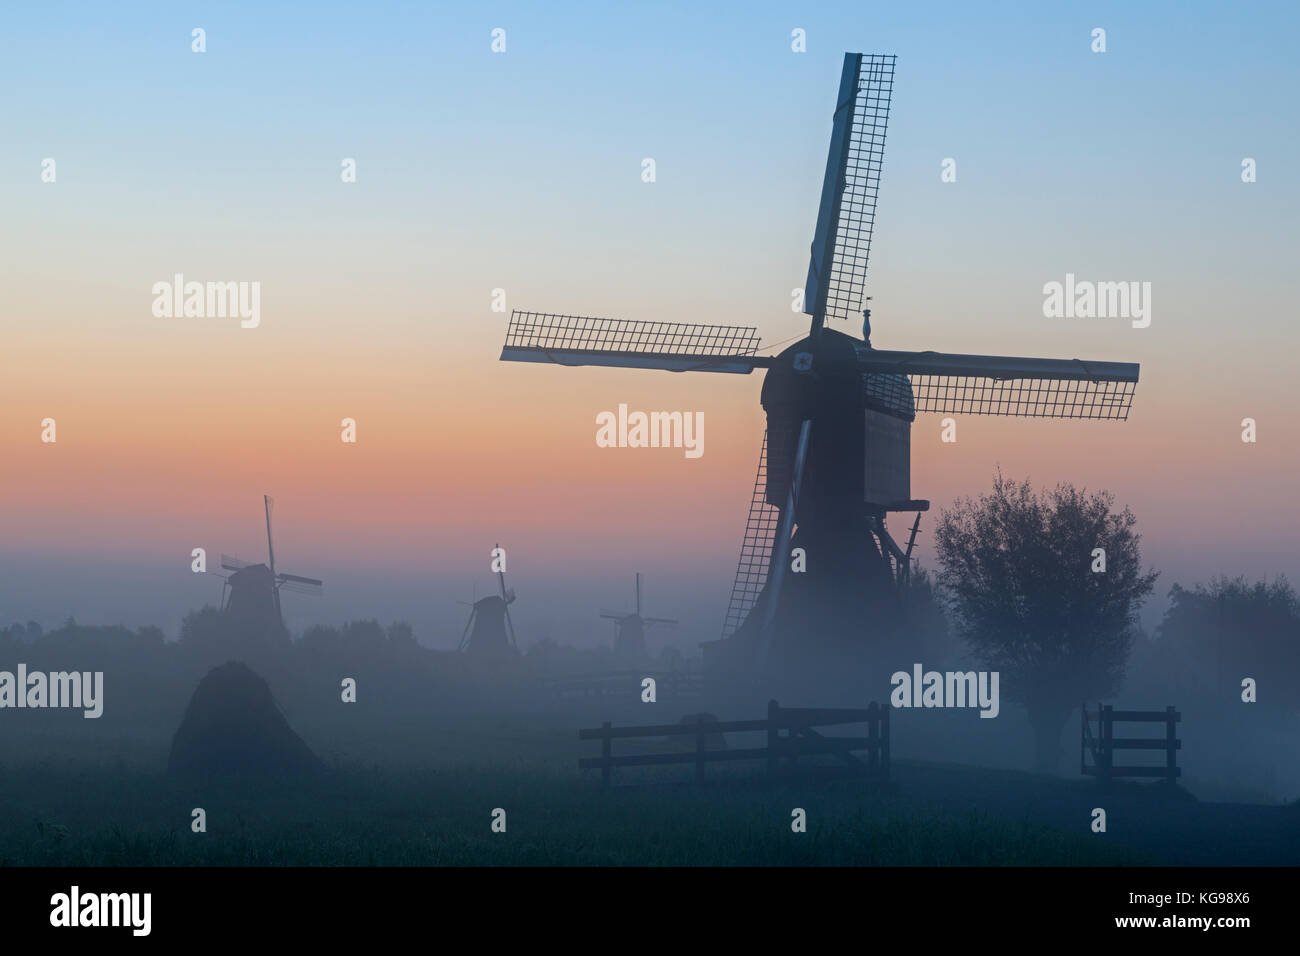 Historische Windmühlen, UNESCO-Weltkulturerbe, kinderdijk, Niederlande, Netherland, Europa Stockfoto